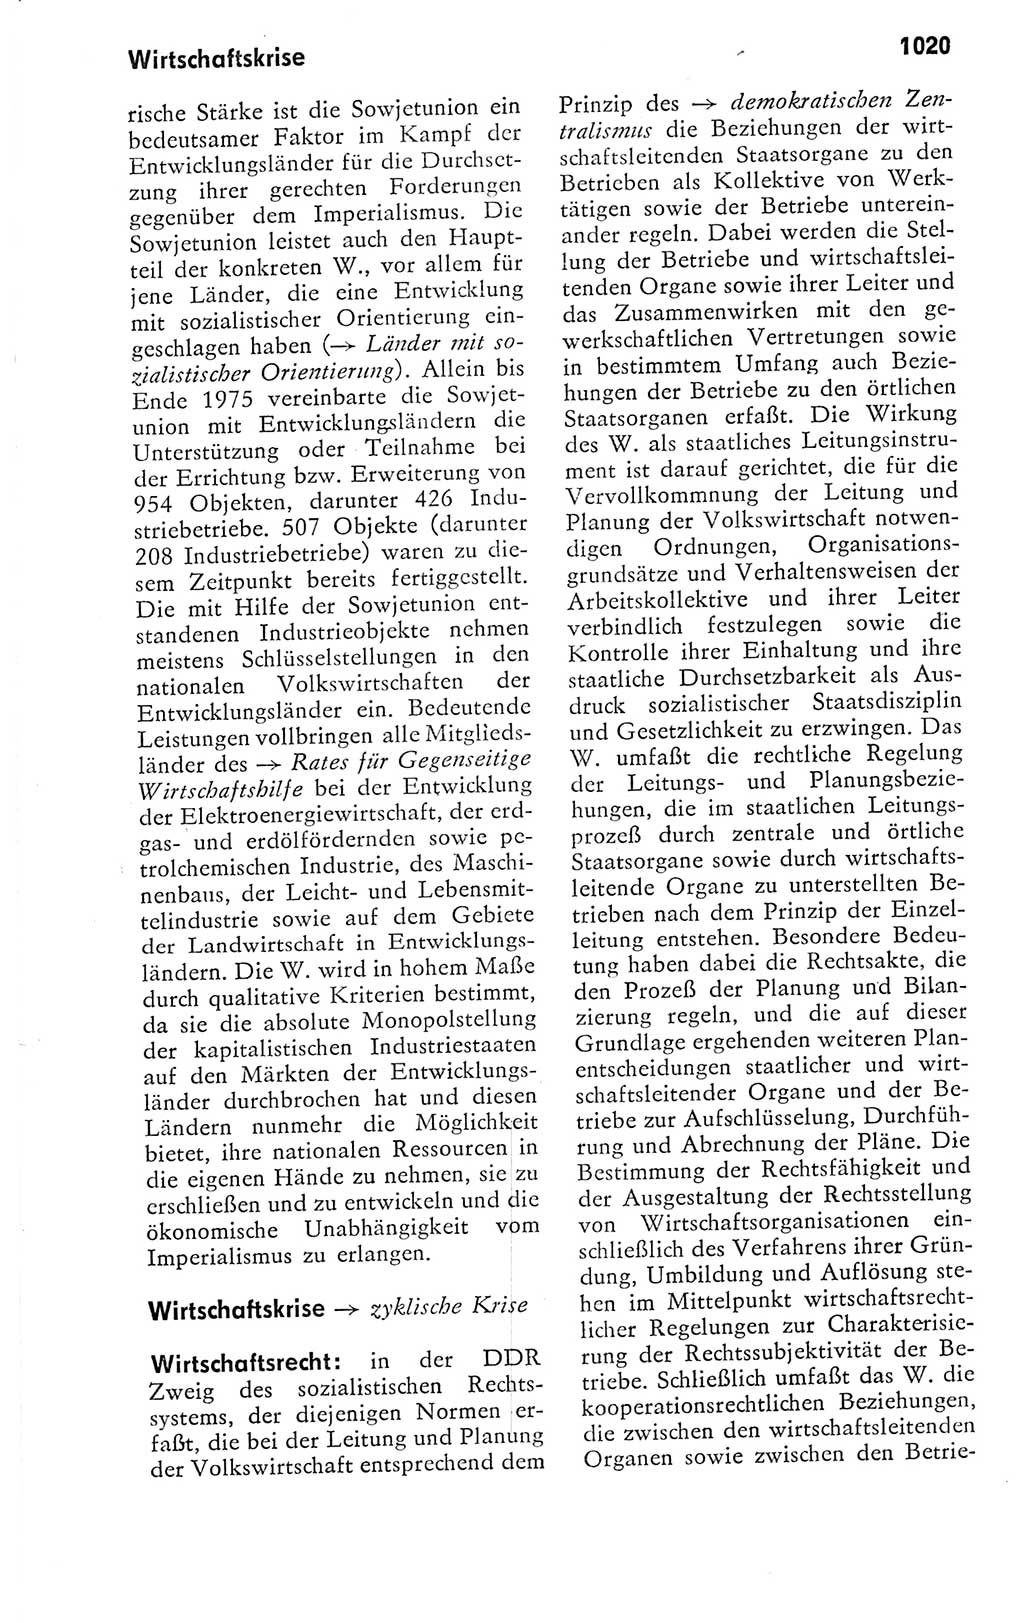 Kleines politisches Wörterbuch [Deutsche Demokratische Republik (DDR)] 1978, Seite 1020 (Kl. pol. Wb. DDR 1978, S. 1020)